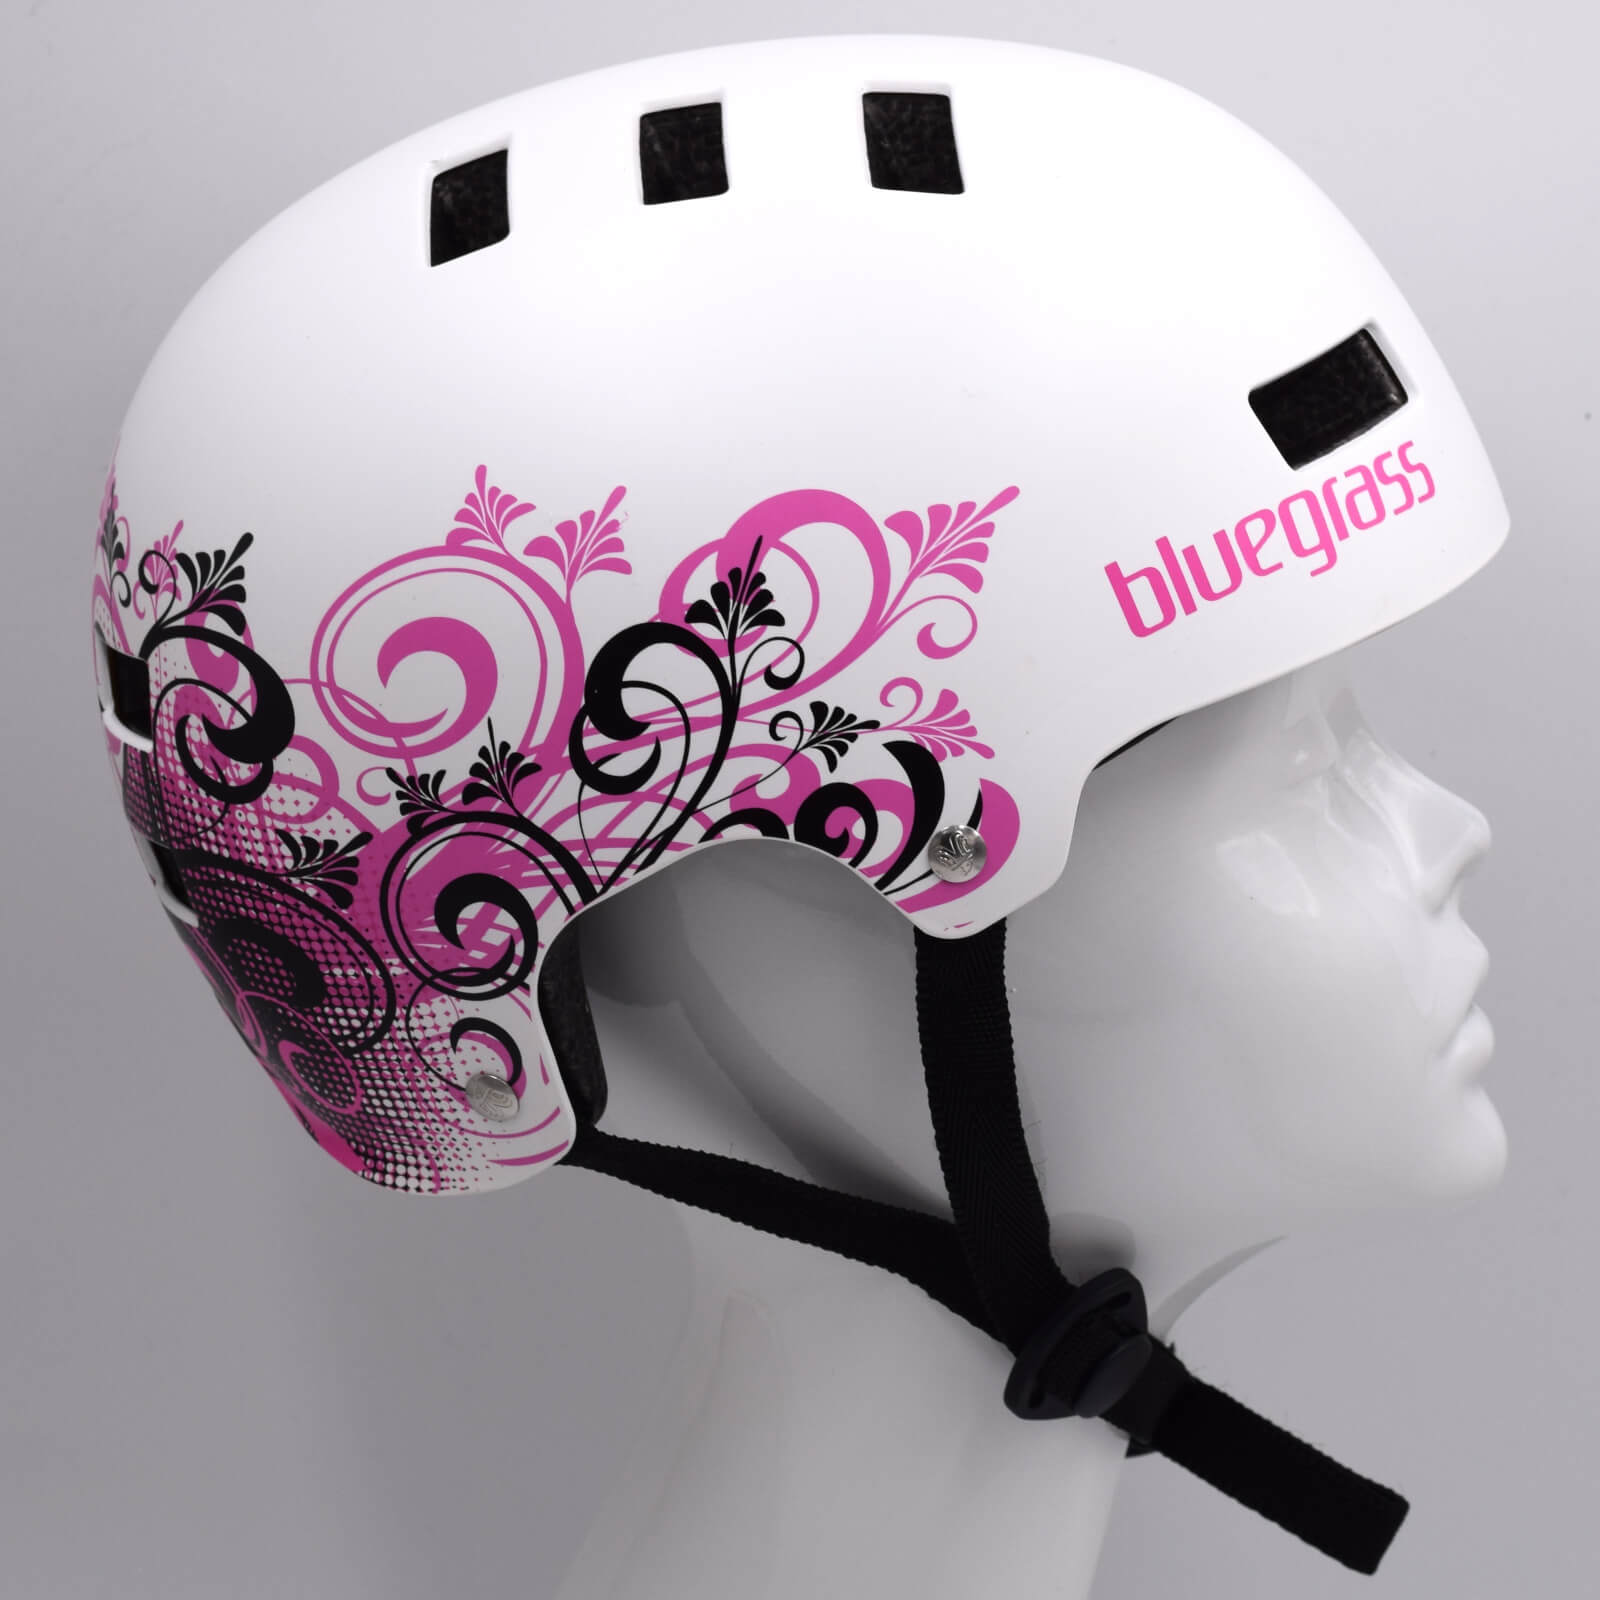 Bluegrass Super Bold BMX Dirt Lid Cycling Helmet Matte White Pink Small (51-55cm) Alternate 1